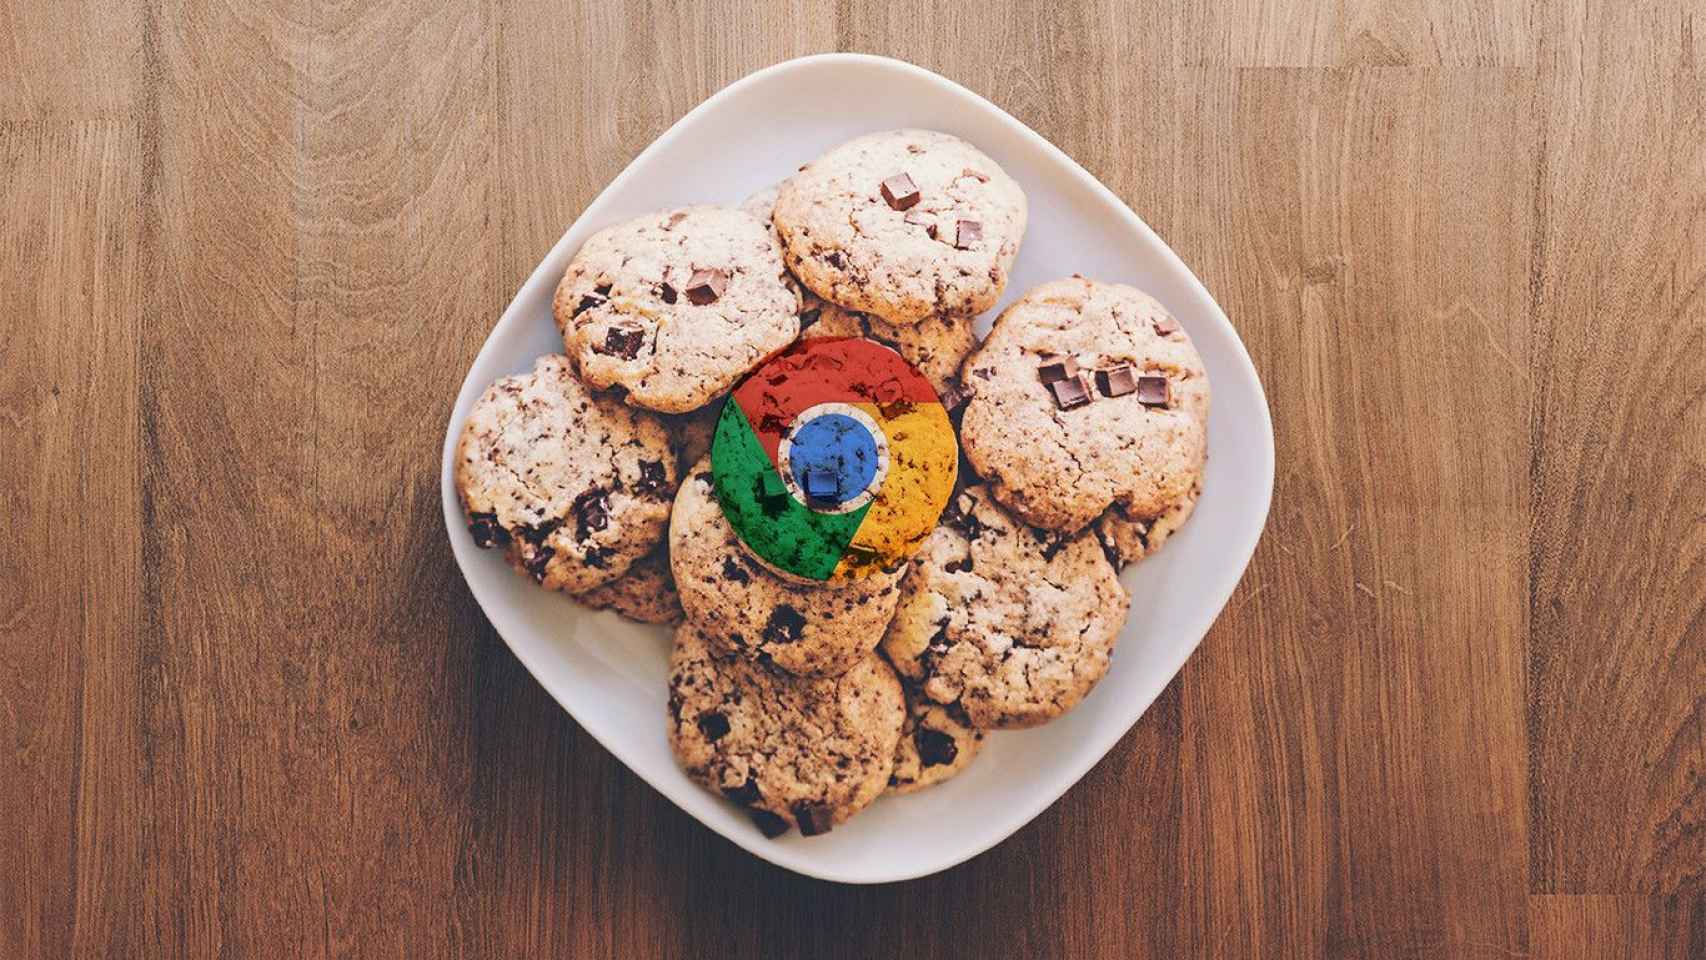 Galletas (cookies) con el símbolo de Google Chrome en una imagen de recurso / ARCHIVO